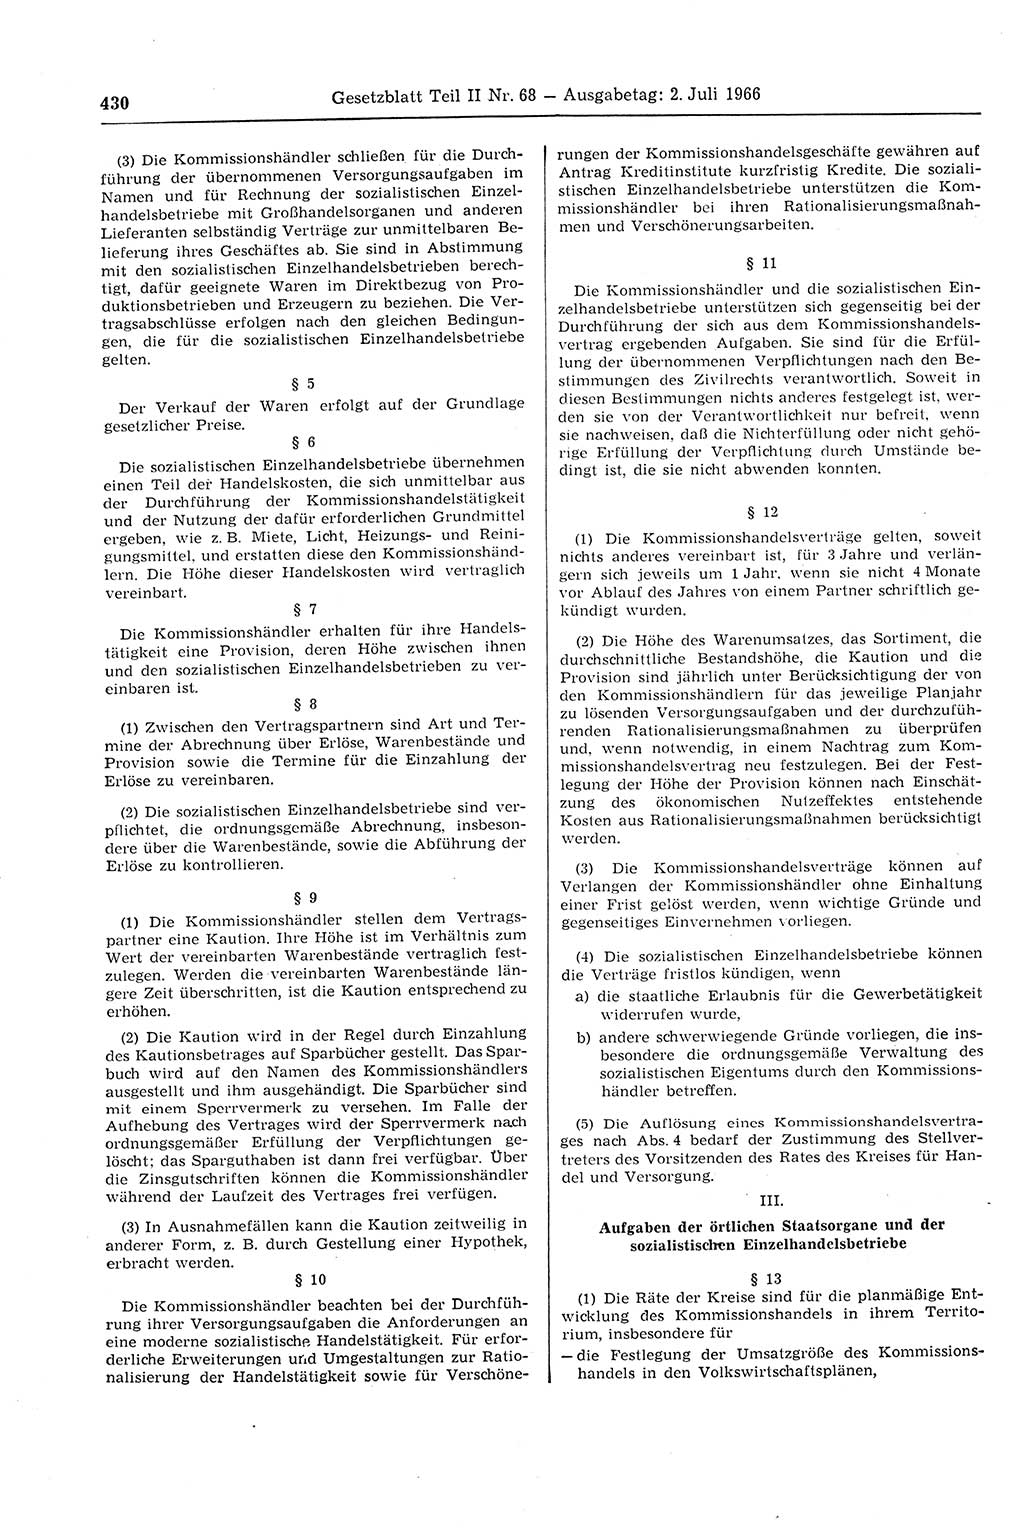 Gesetzblatt (GBl.) der Deutschen Demokratischen Republik (DDR) Teil ⅠⅠ 1966, Seite 430 (GBl. DDR ⅠⅠ 1966, S. 430)